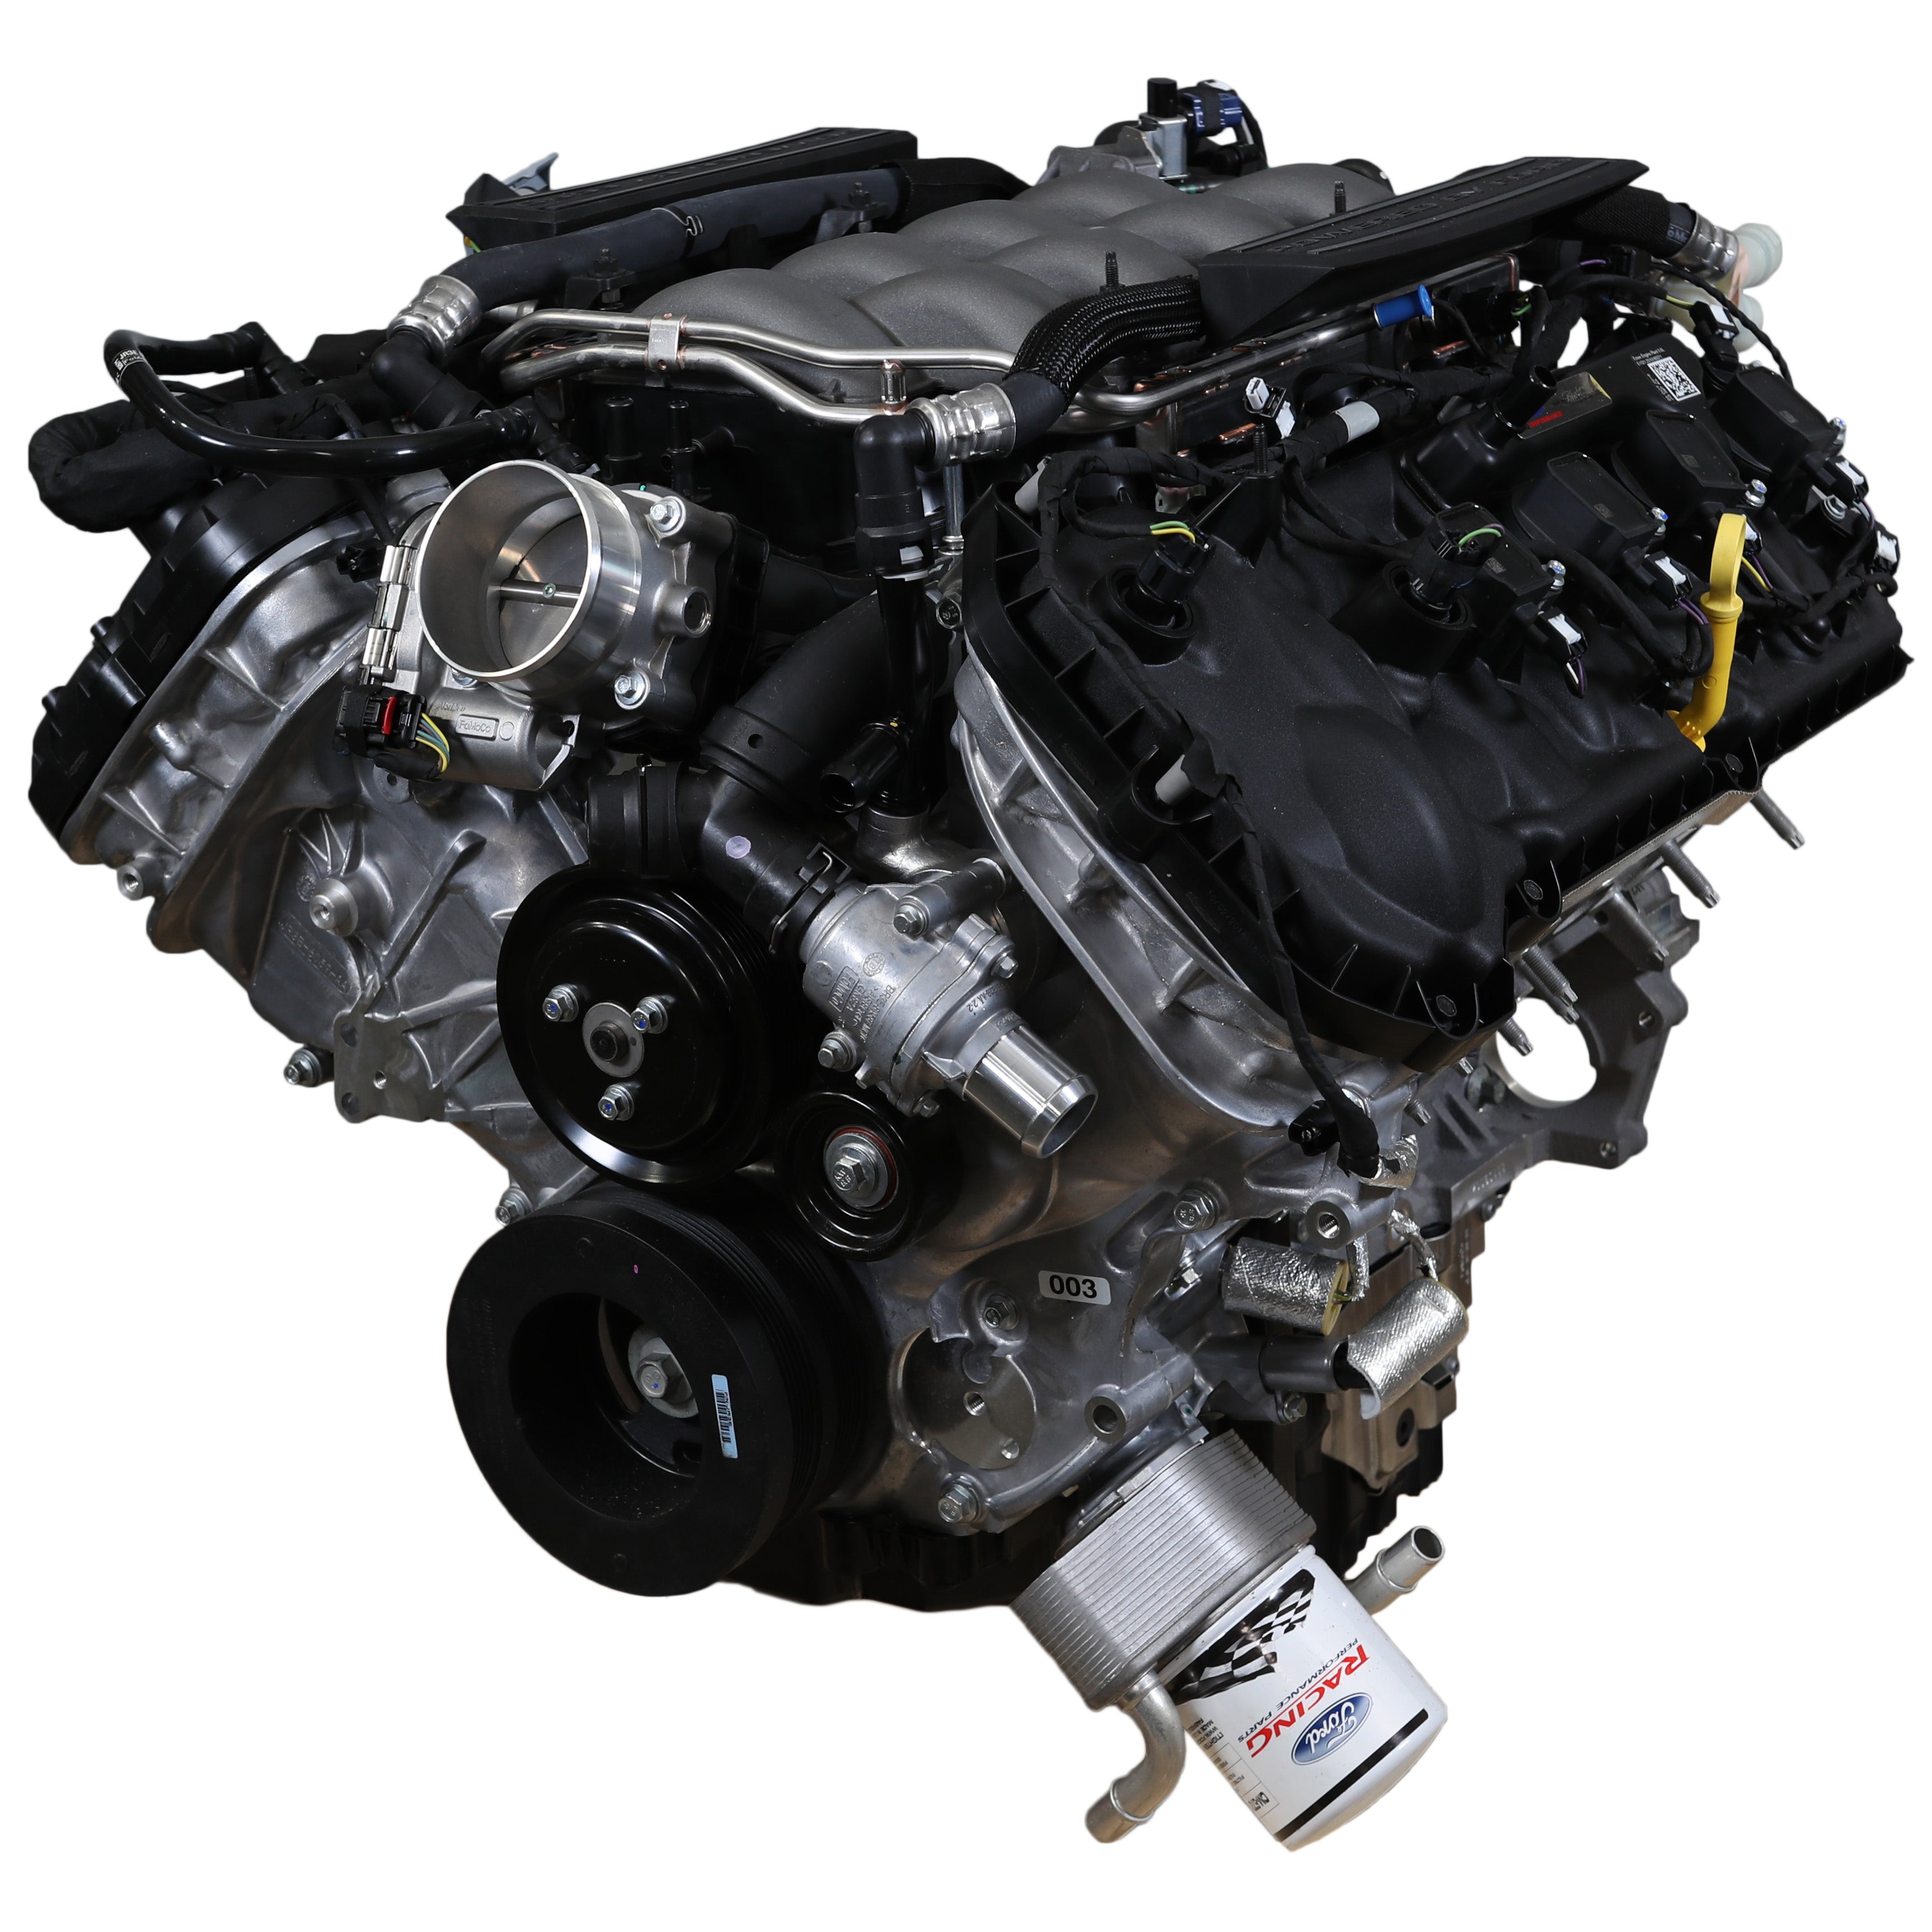 Ford Performance 5.0L "Aluminator" Gen 3 ládamotor